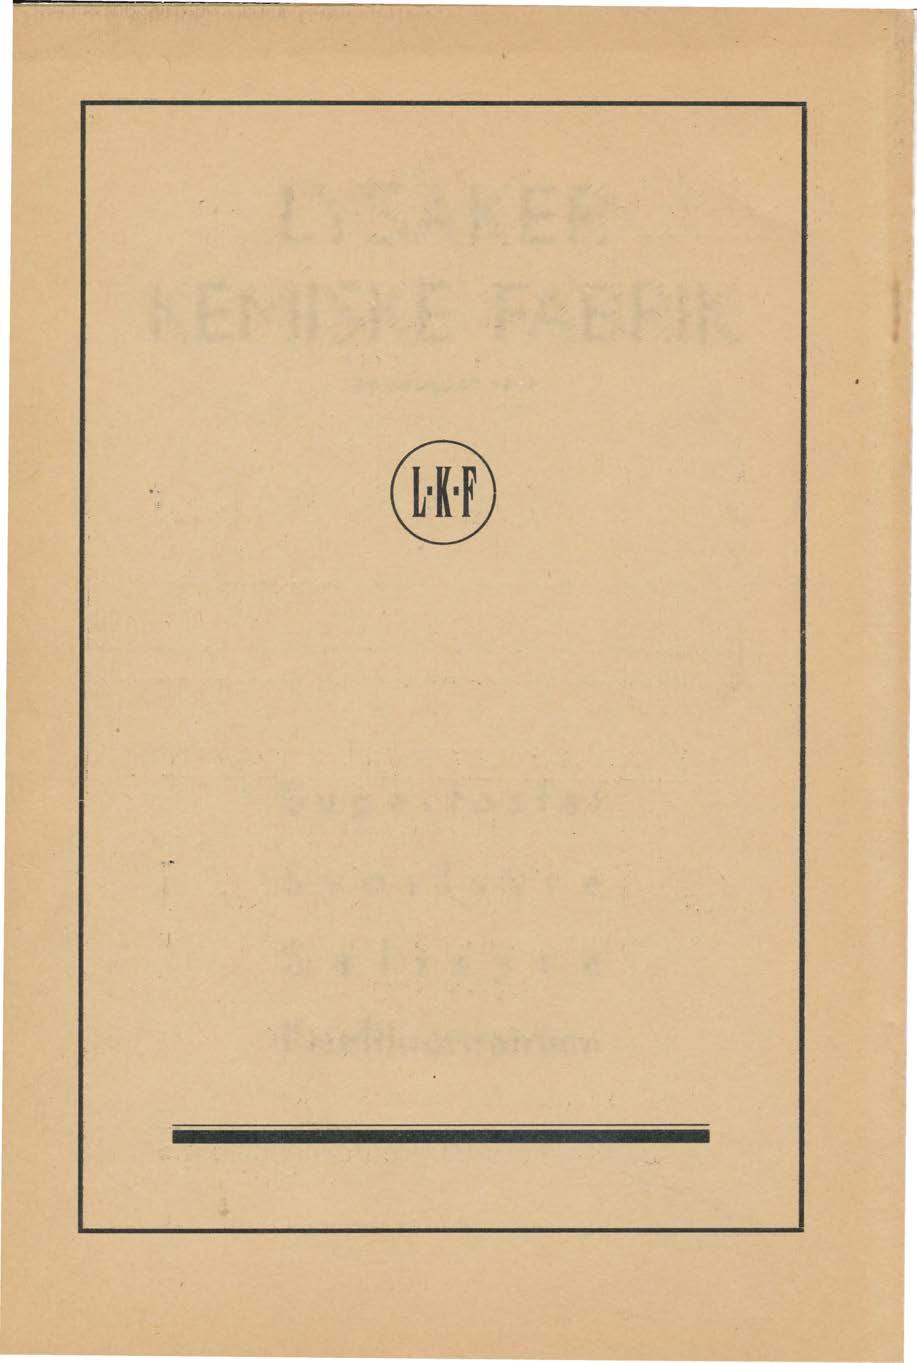 LYSAKER KEMISKE FABRIK GRUNNLAGT 1859